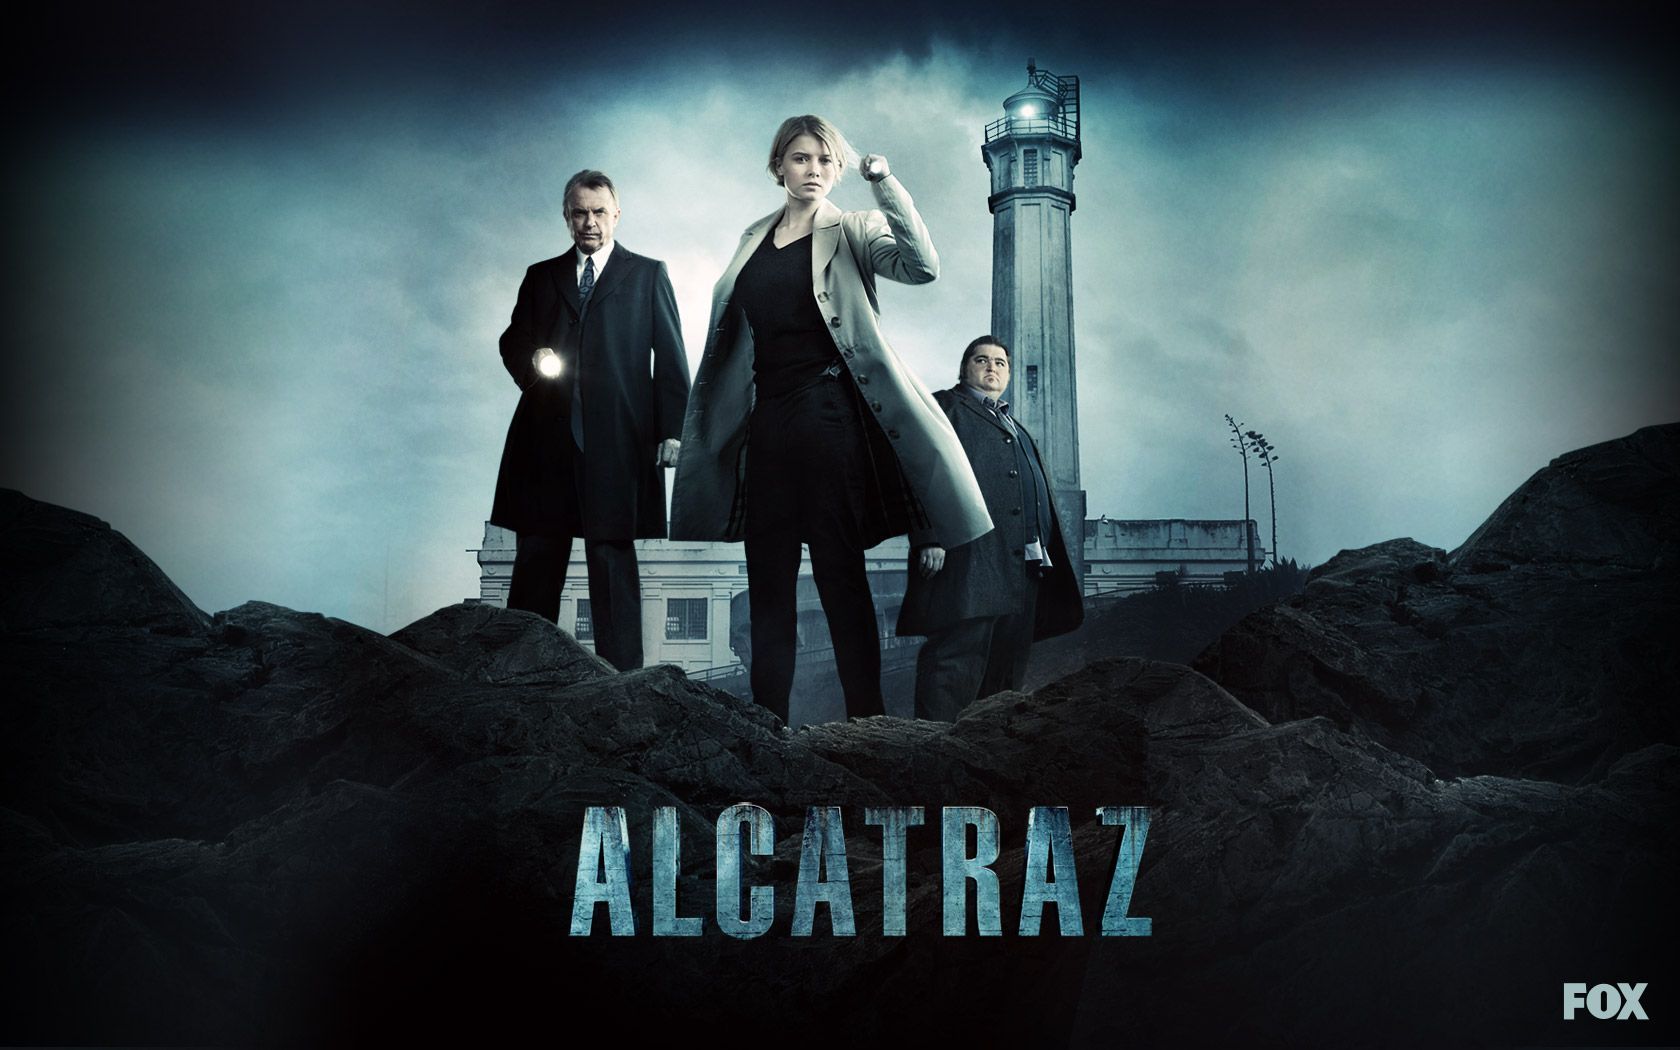 Alcatraz - Alcatraz TV Show Wallpaper 29466308 - Fanpop